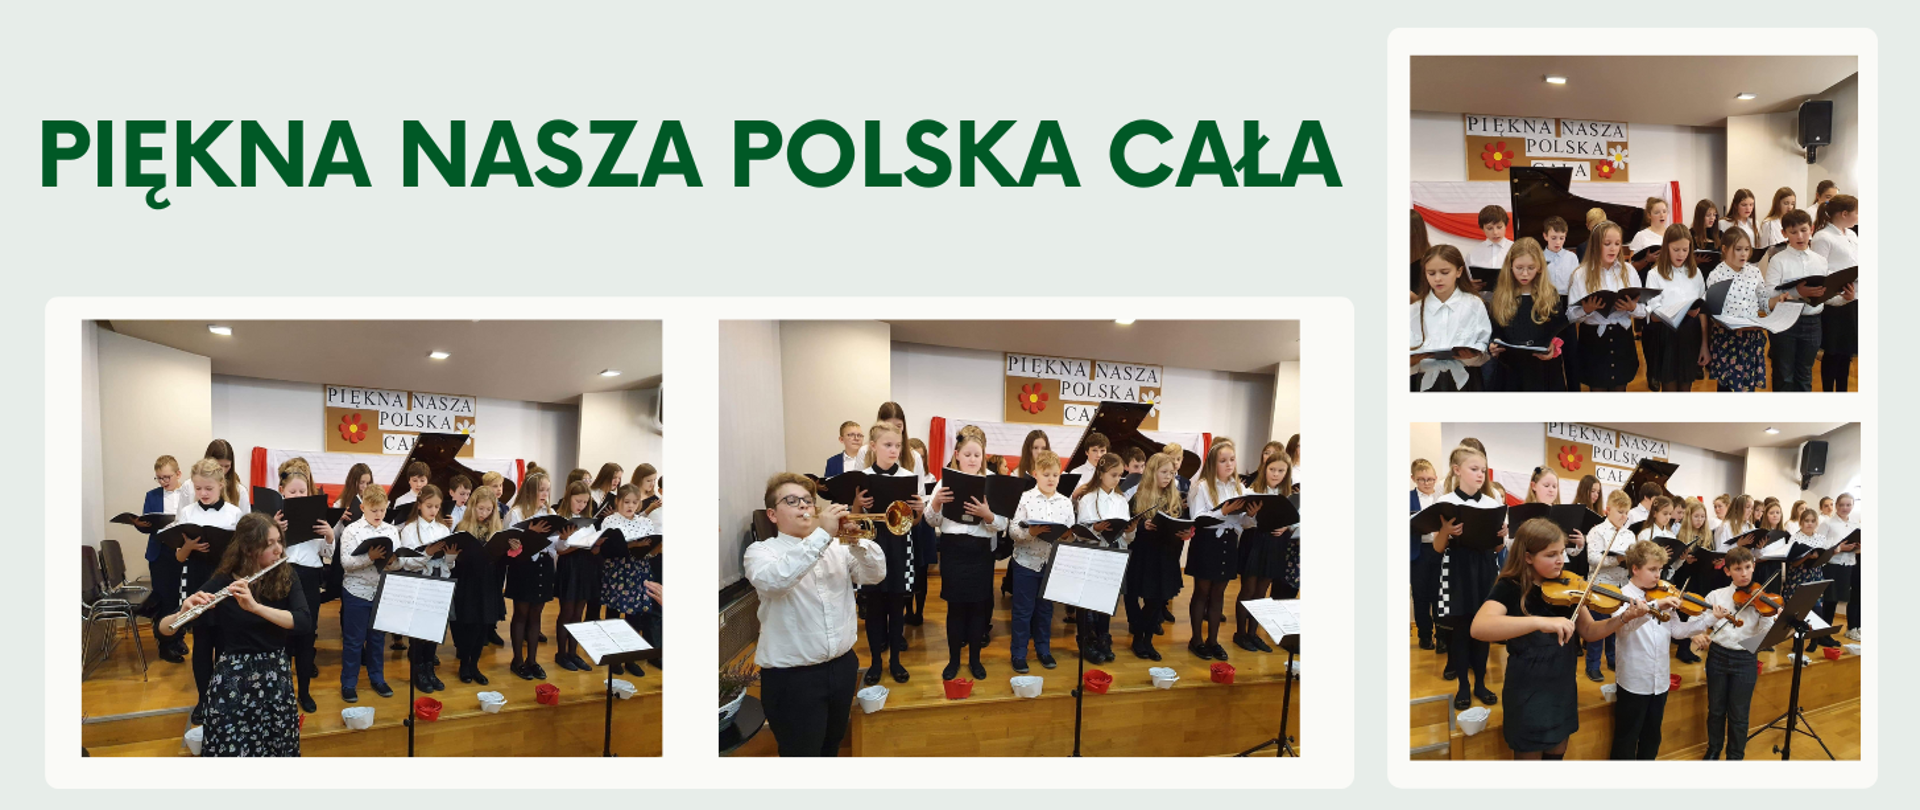 Na seledynowym tle w górnej części obrazka zielony napis "Piękna nasza Polska cała". Poniżej oraz po prawej stronie zdjęcia odświętnie ubranych uczniów, którzy wystąpili podczas koncertu.